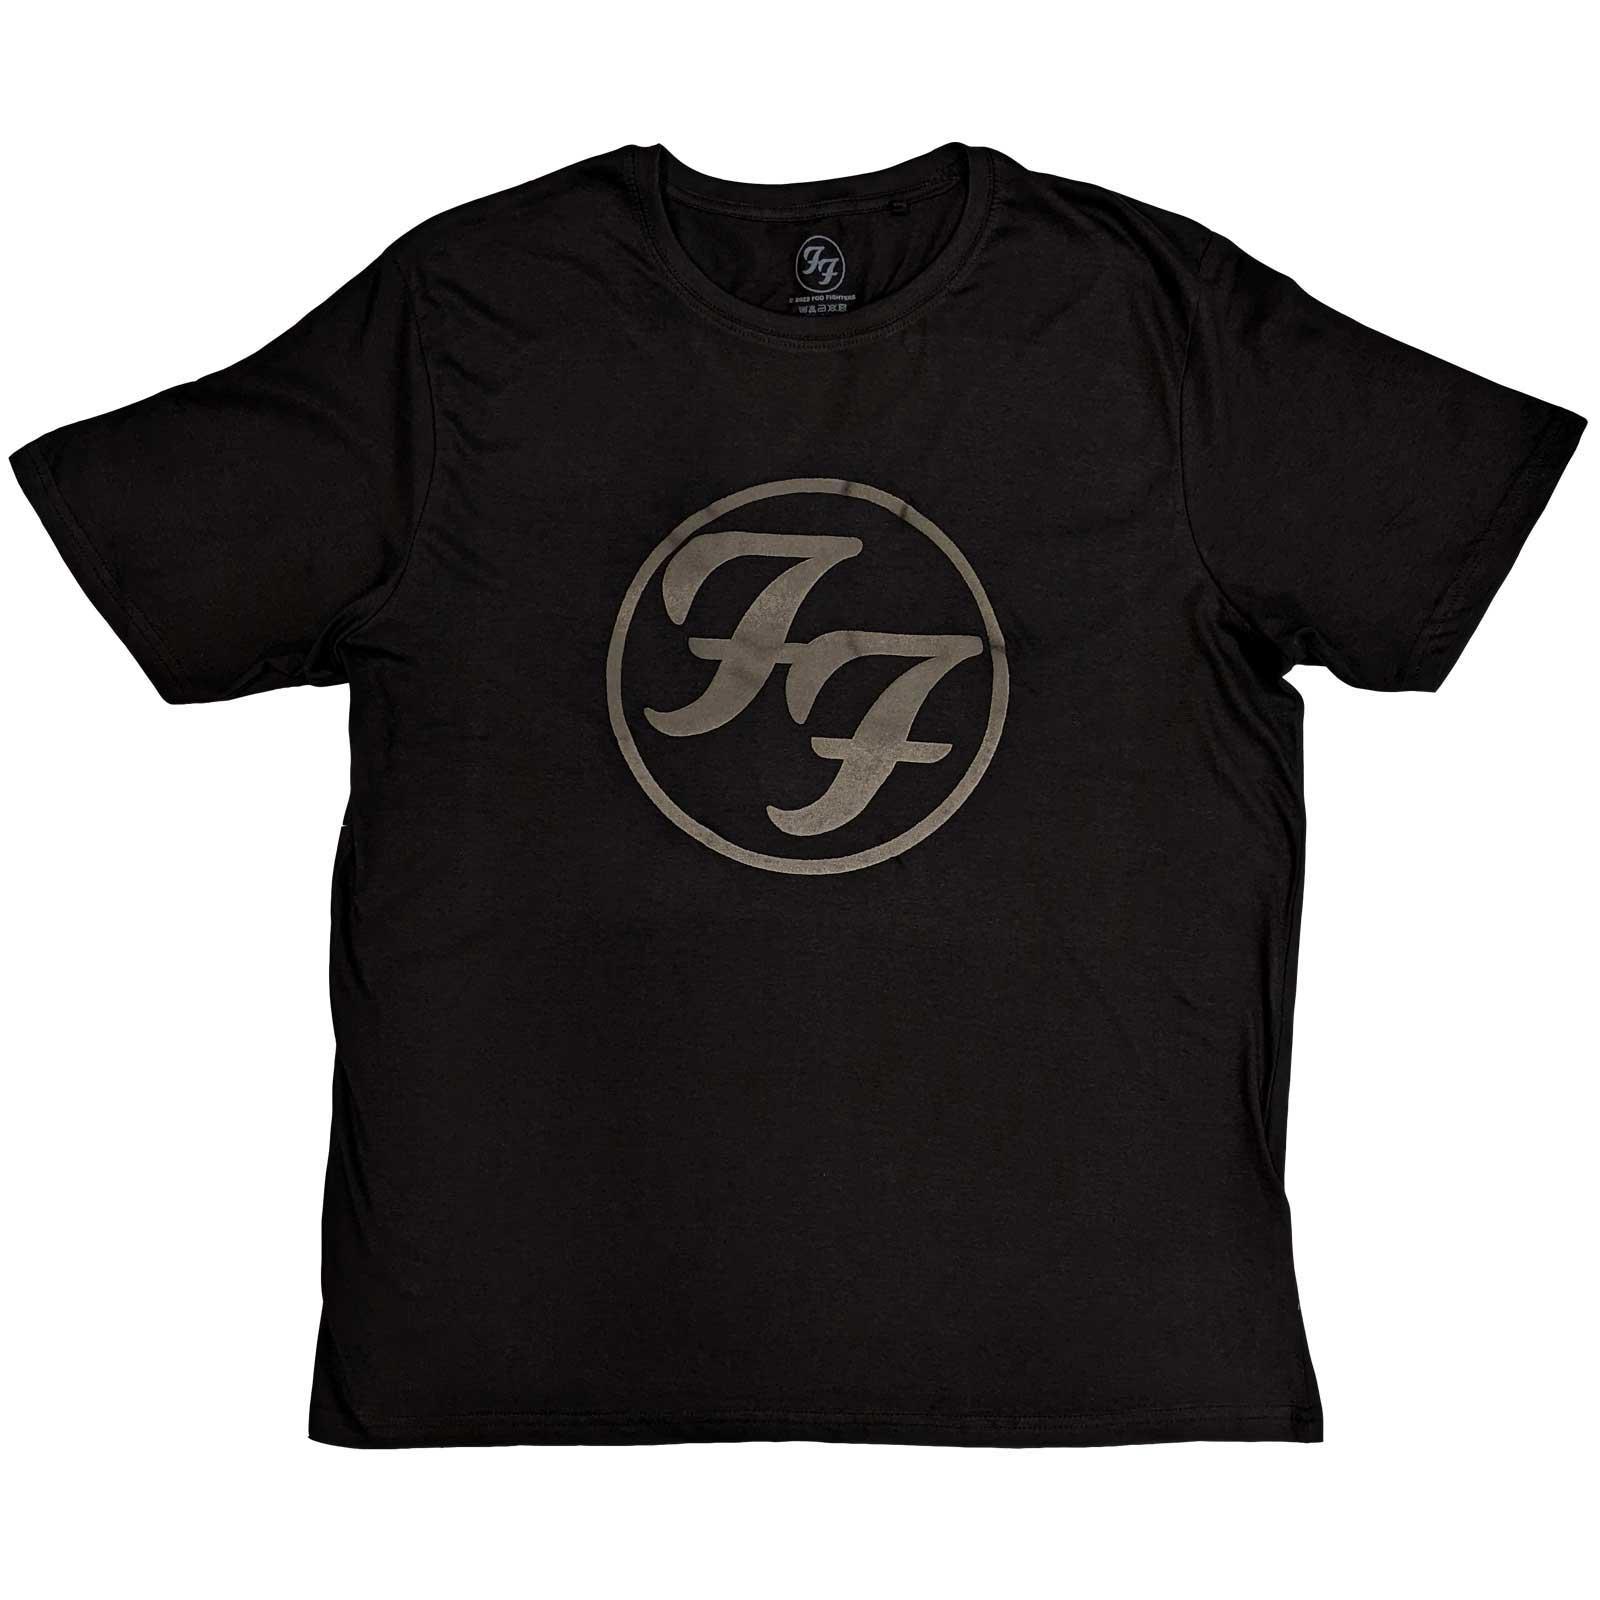 フー・ファイターズ Foo Fighters オフィシャル商品 ユニセックス ロゴ ハイビルド Tシャツ 半袖 トップス 【海外通販】